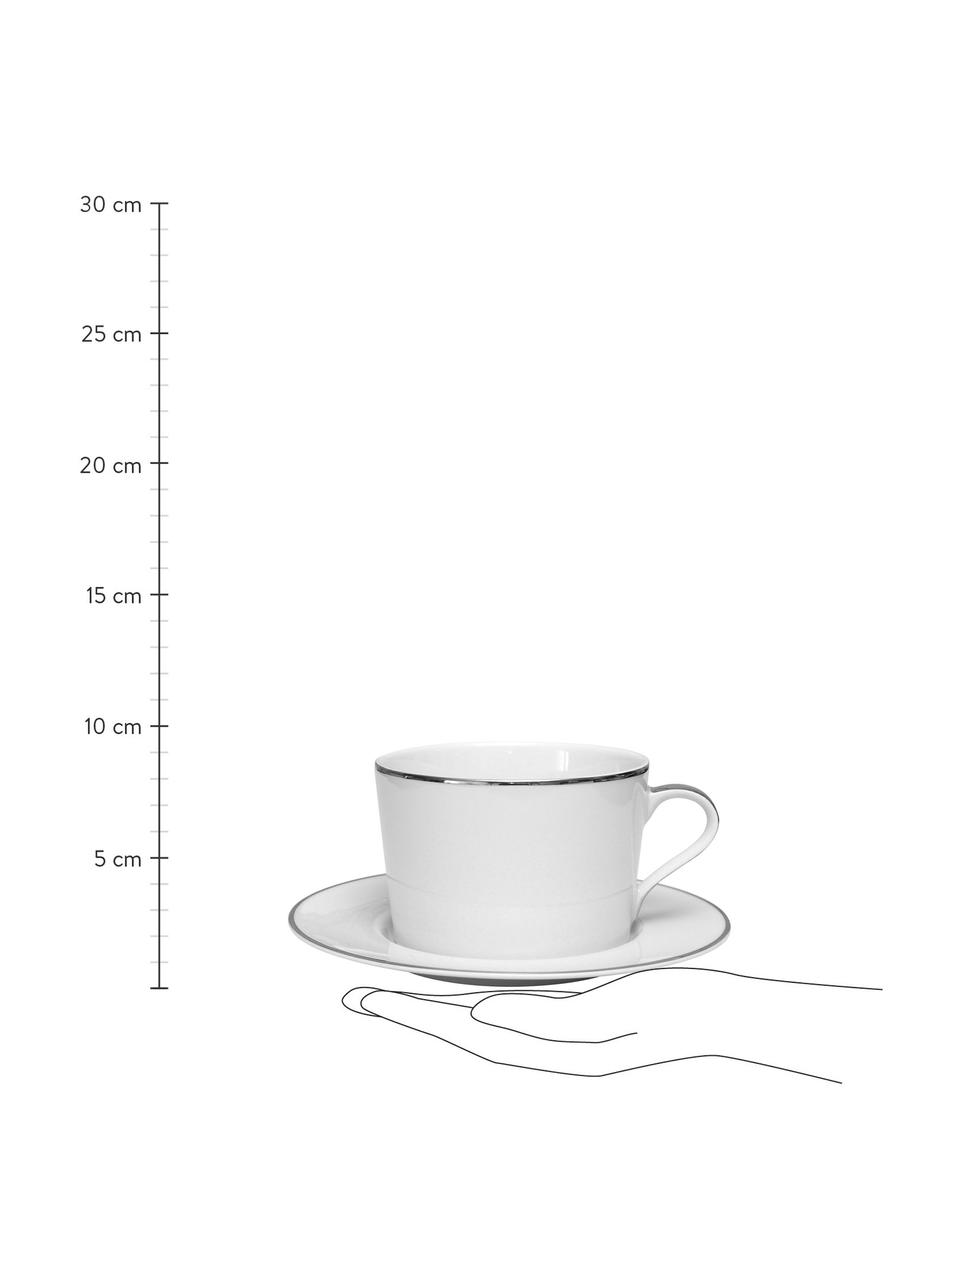 Porzellan-Kaffetassen Ginger mit Untertassen und silberfarbenem Rand, 2 Stück, Porzellan, Weiß, Silberfarben, Ø 17 x H 8 cm